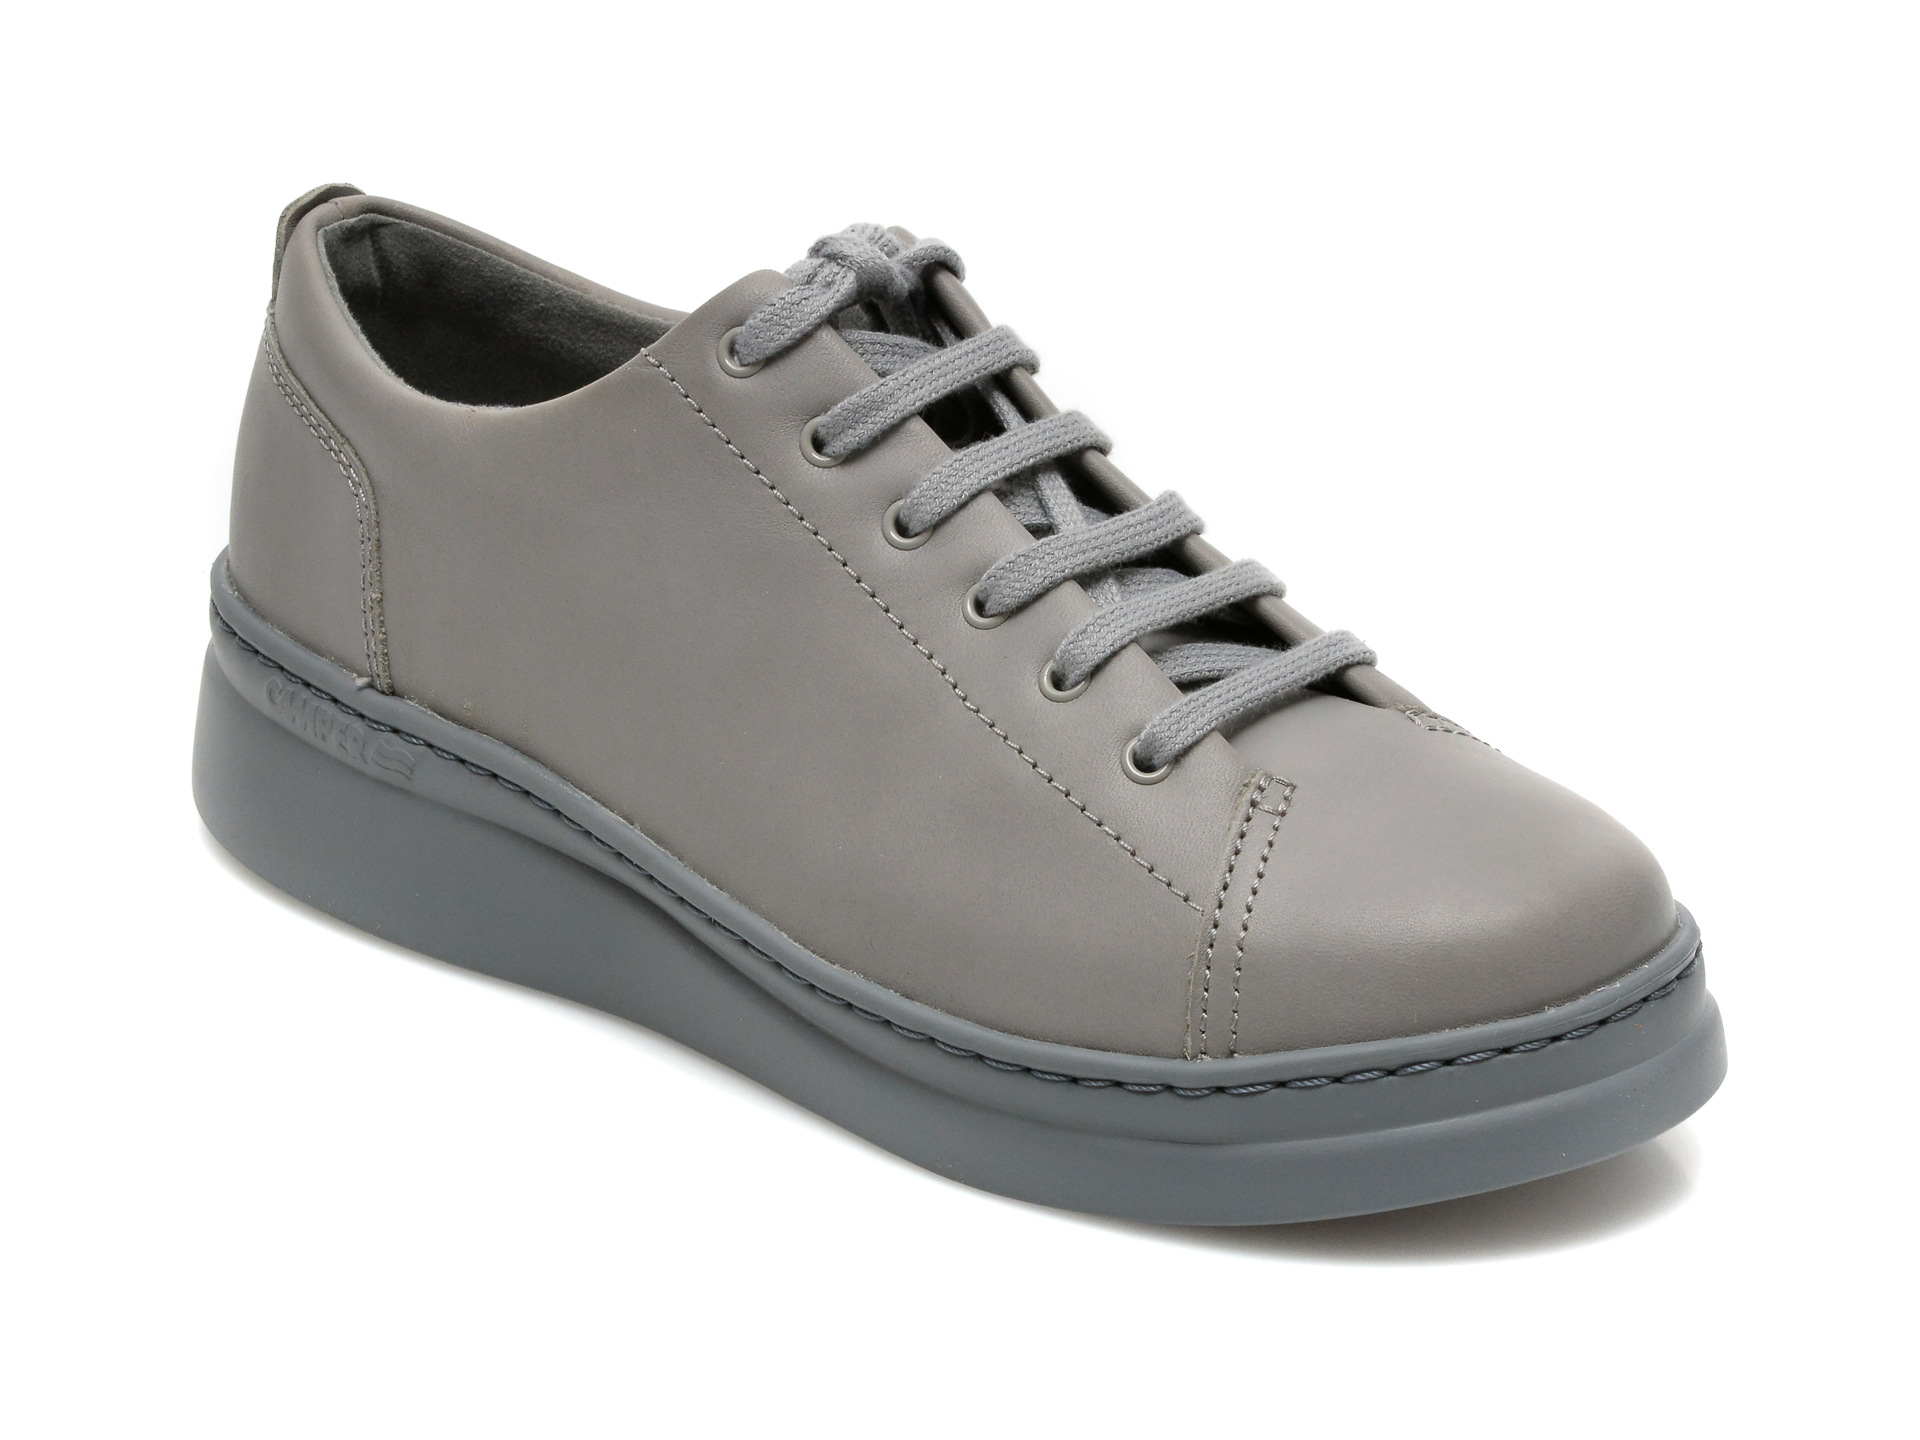 Pantofi CAMPER gri, K200645, din piele naturala Camper